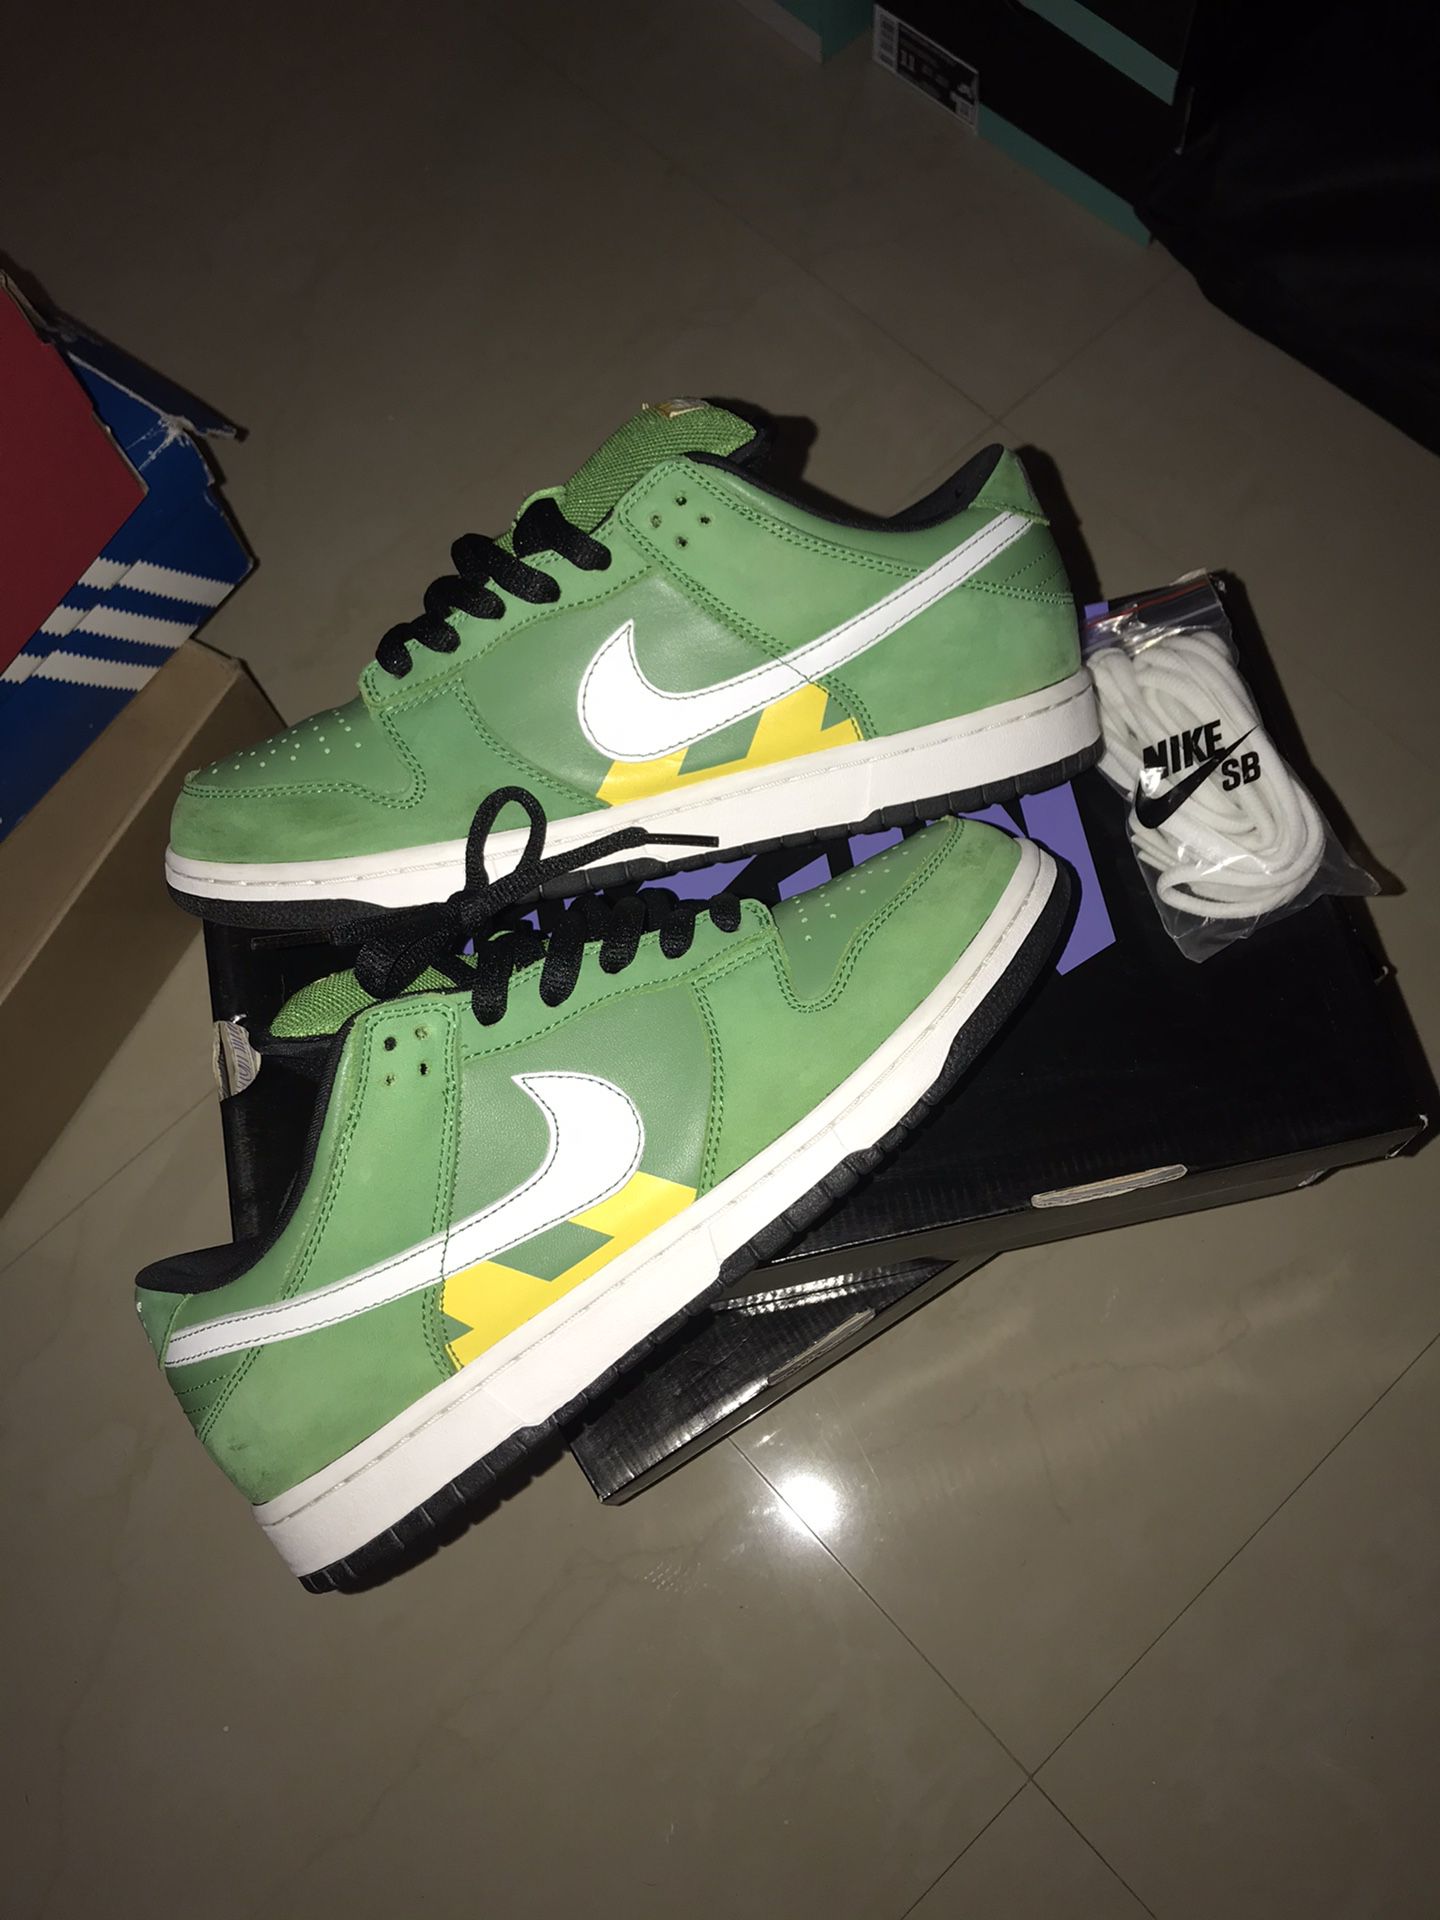 Nike SB “Green Taxi”